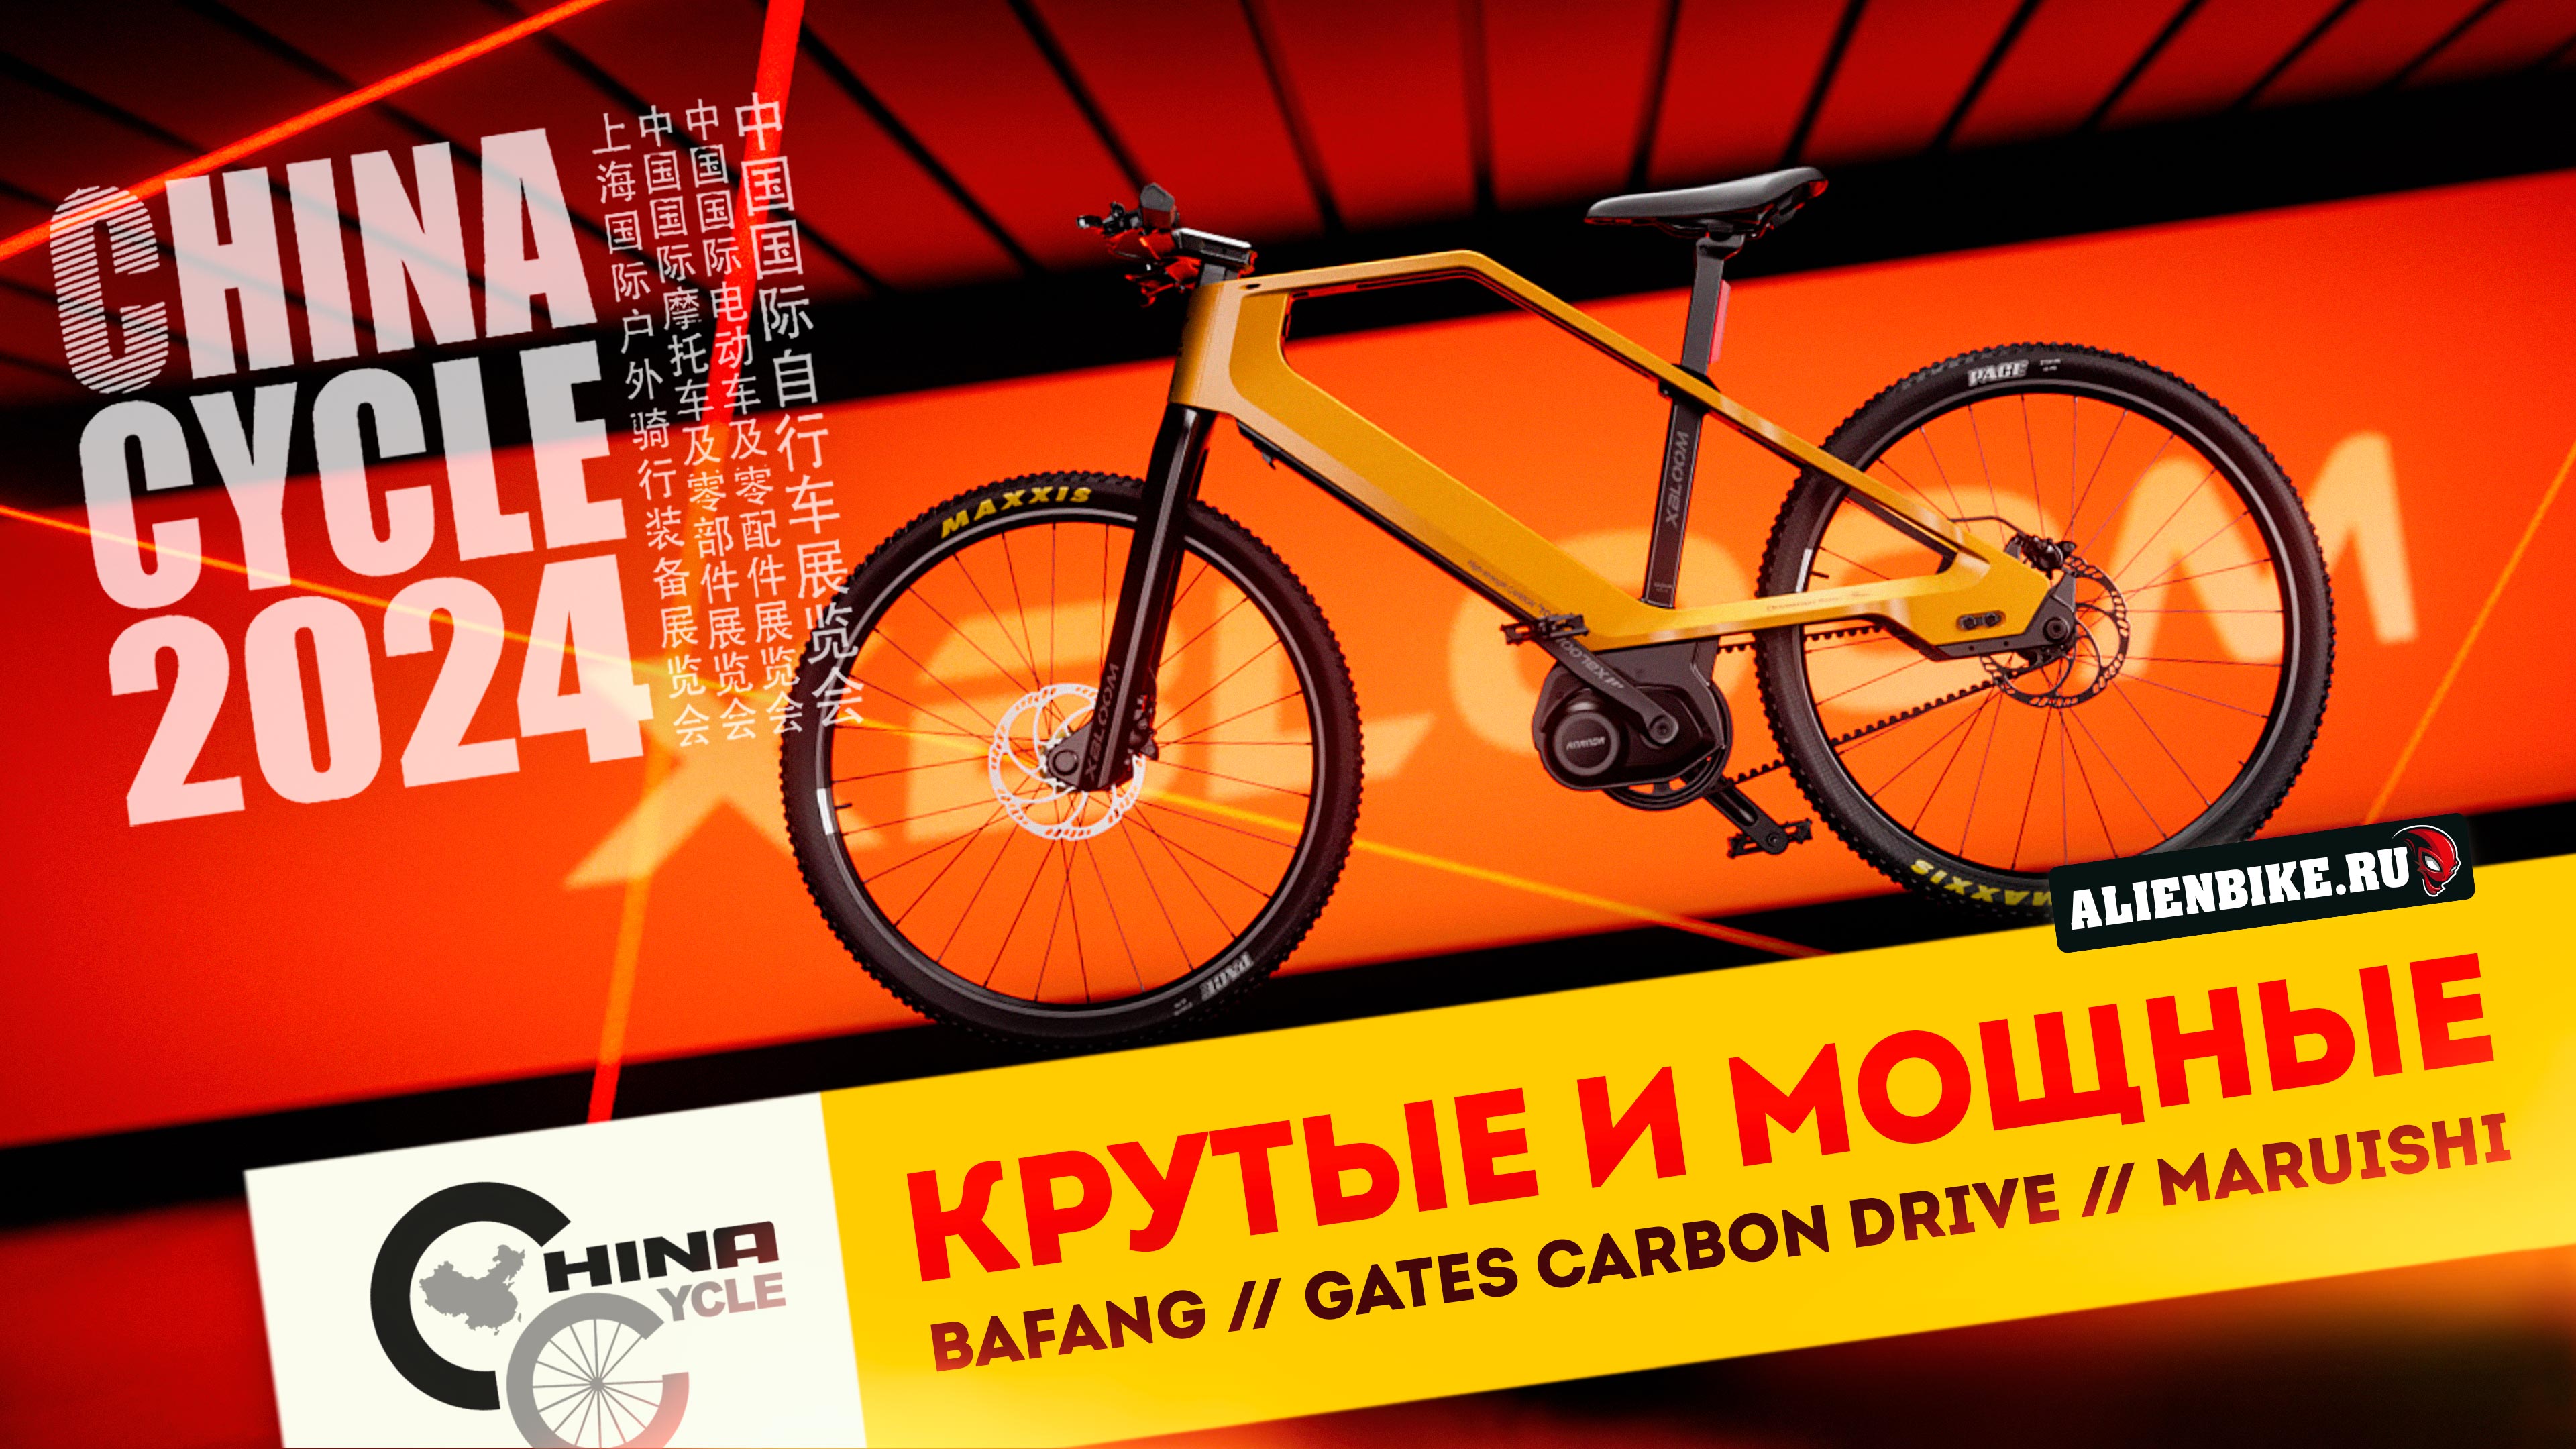 Мощные велосипеды с мотором Bafang // Gates Carbon Drive // Велосипеды Maruishi | China Cycle 2024